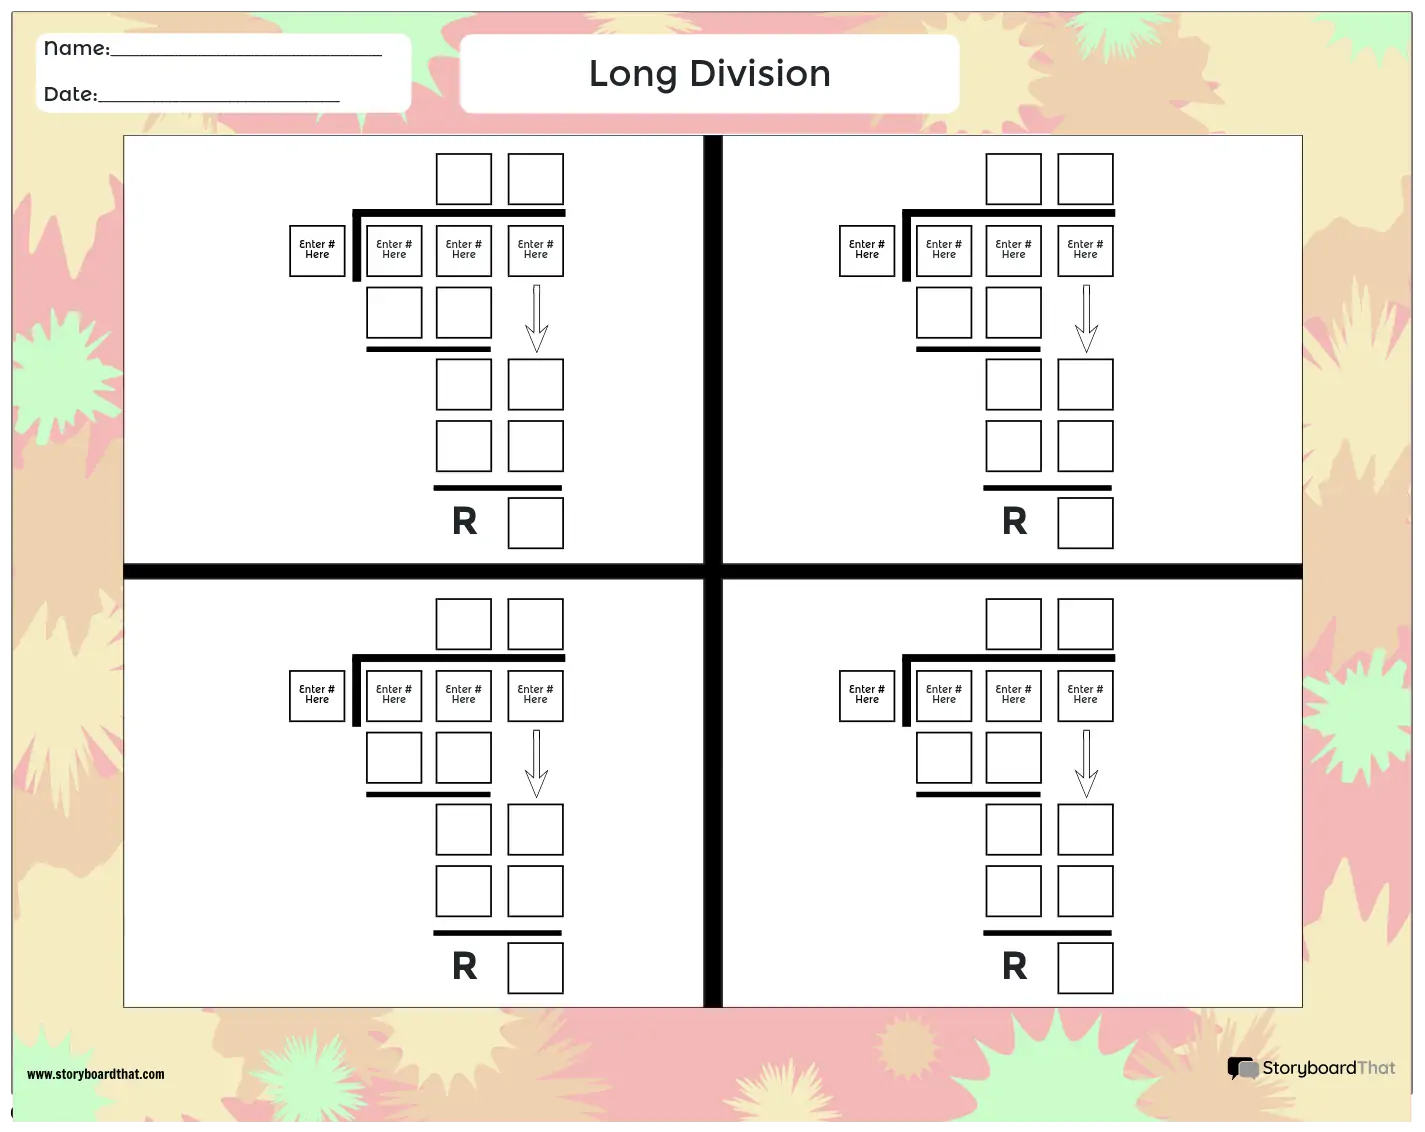 Division Longue 7